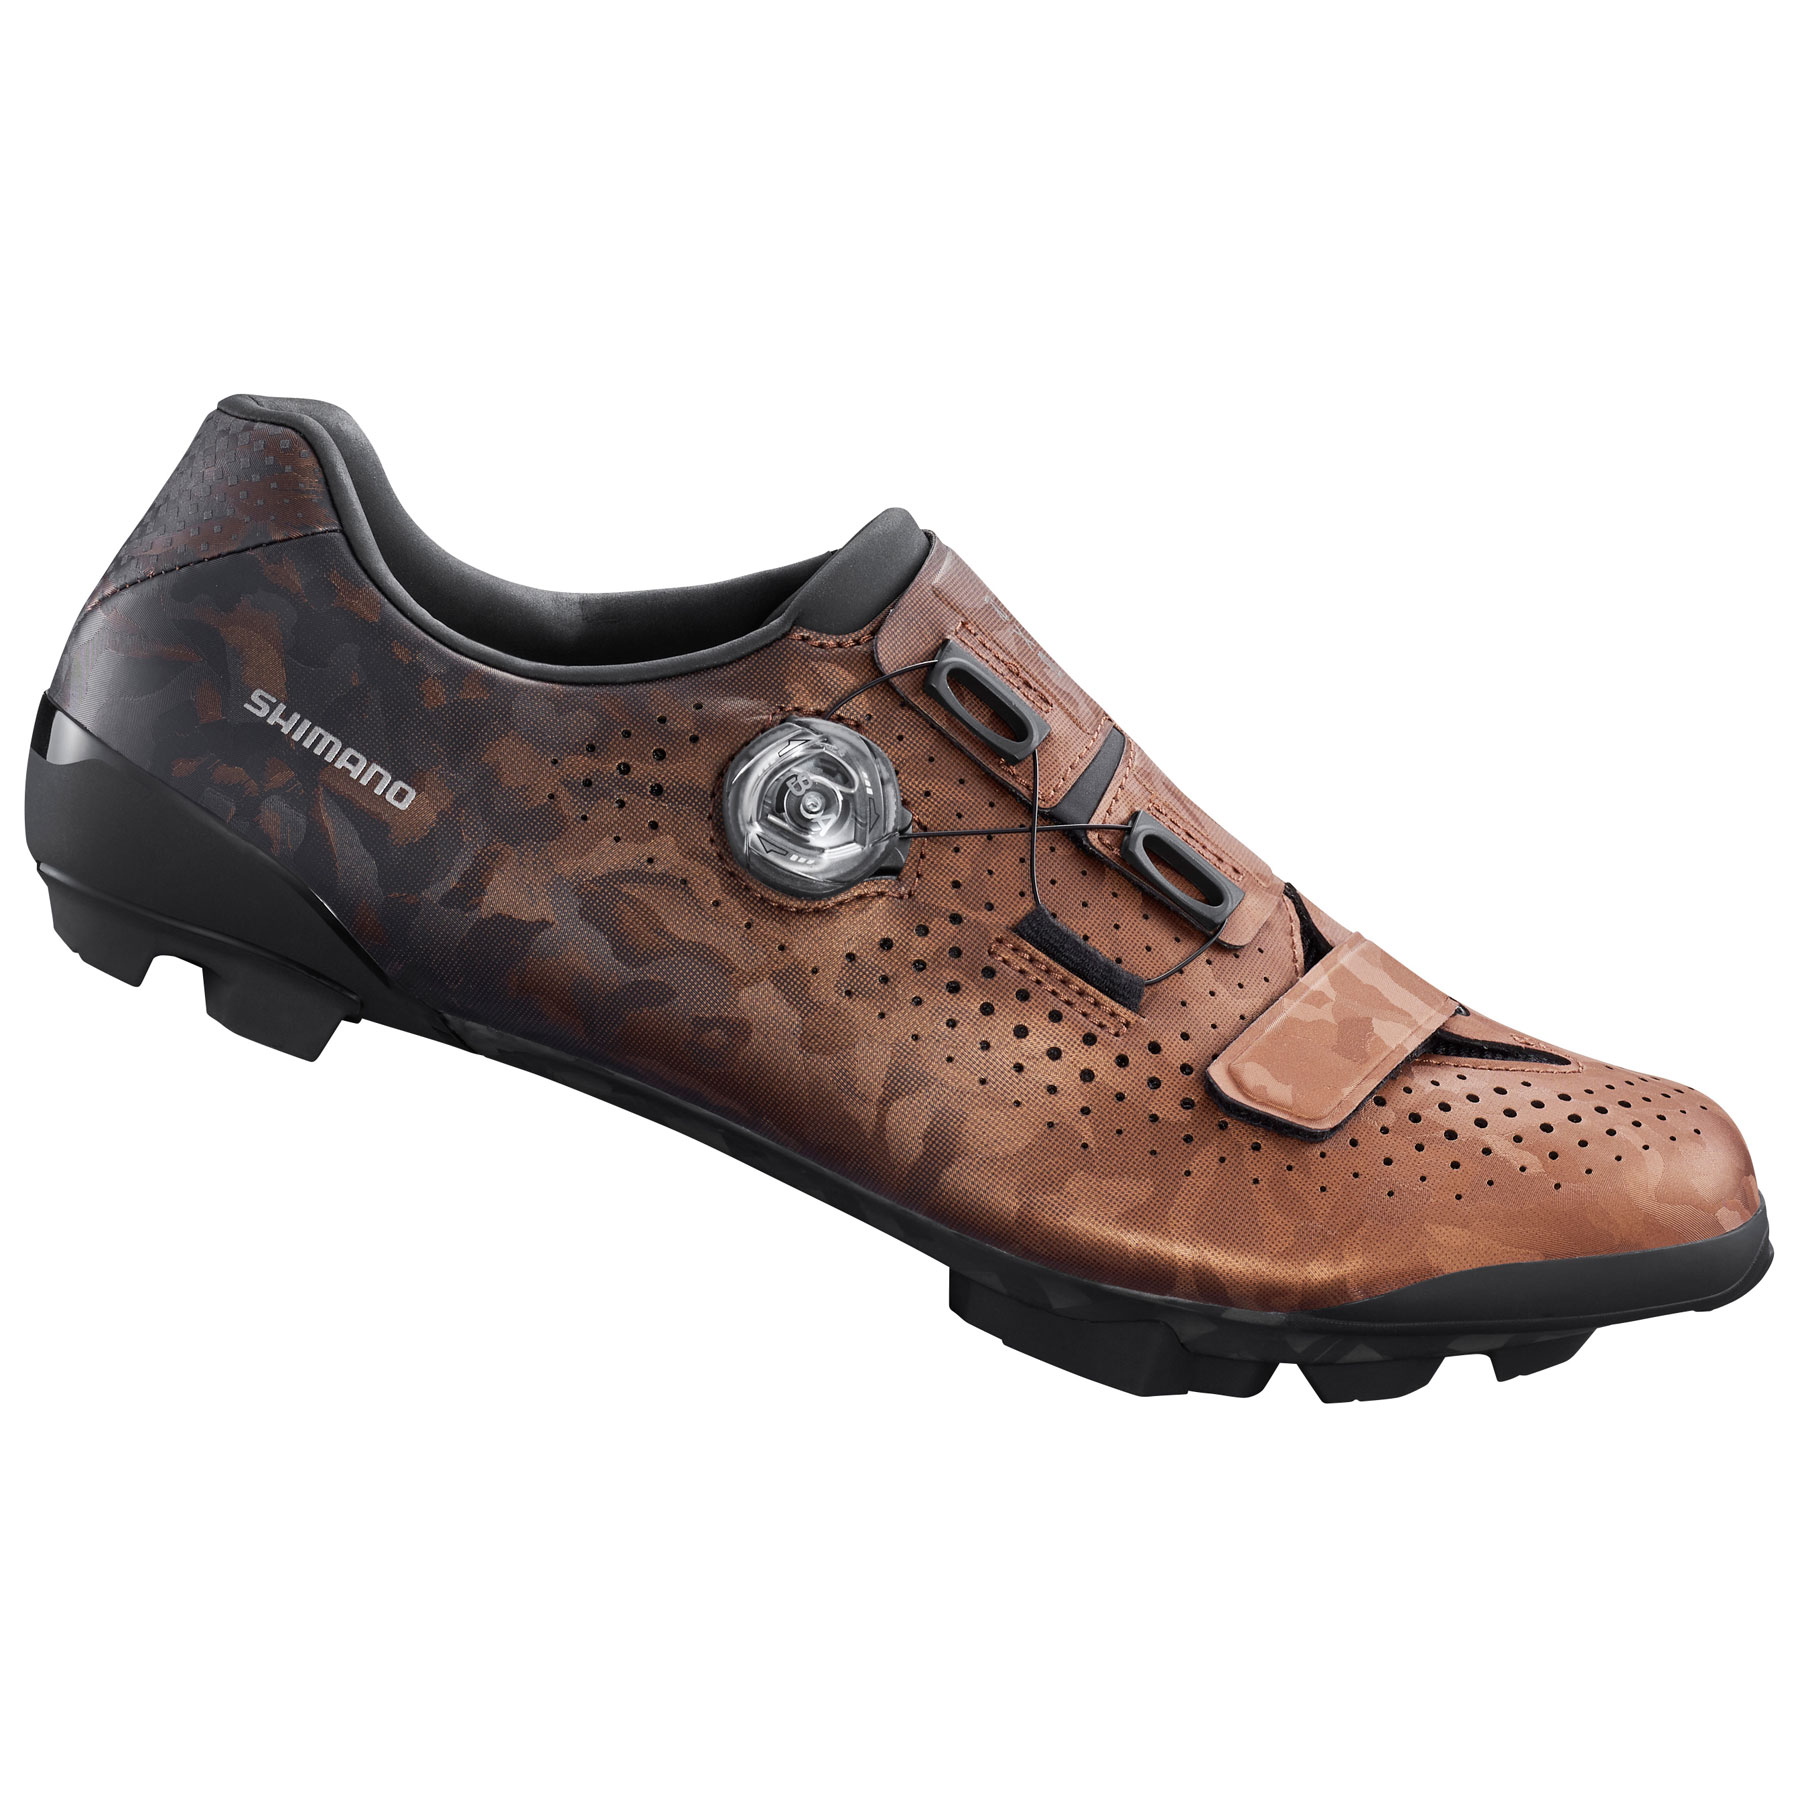 Produktbild von Shimano SH-RX800 Gravel Bike Schuhe Herren - Bronze